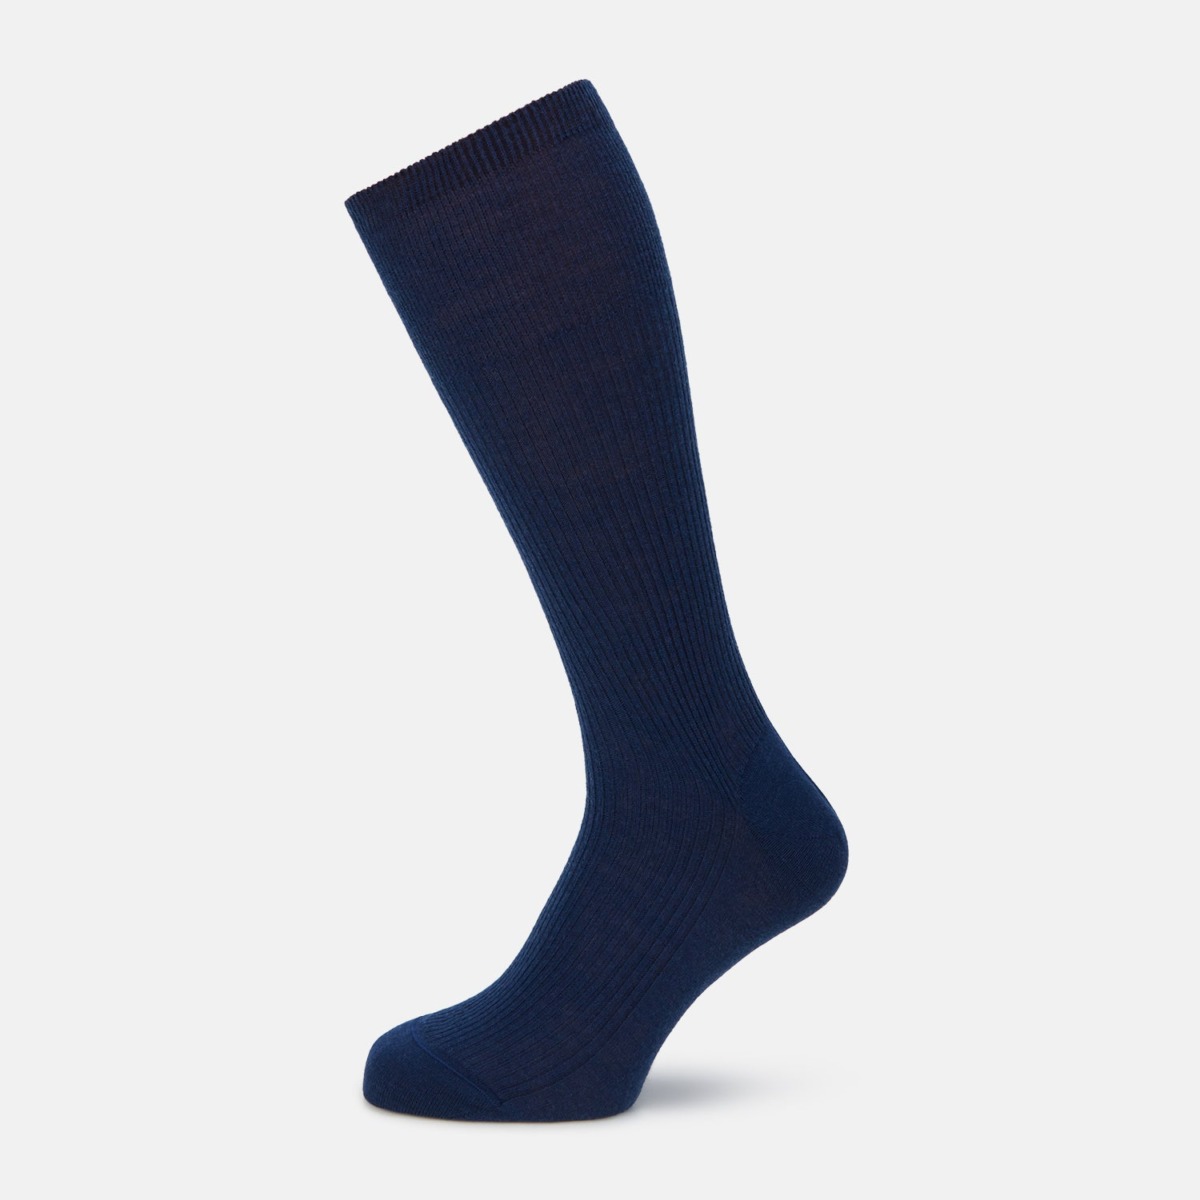 Turnbull & Asser Men's Socks in Blue - Turnbull And Asser GOOFASH